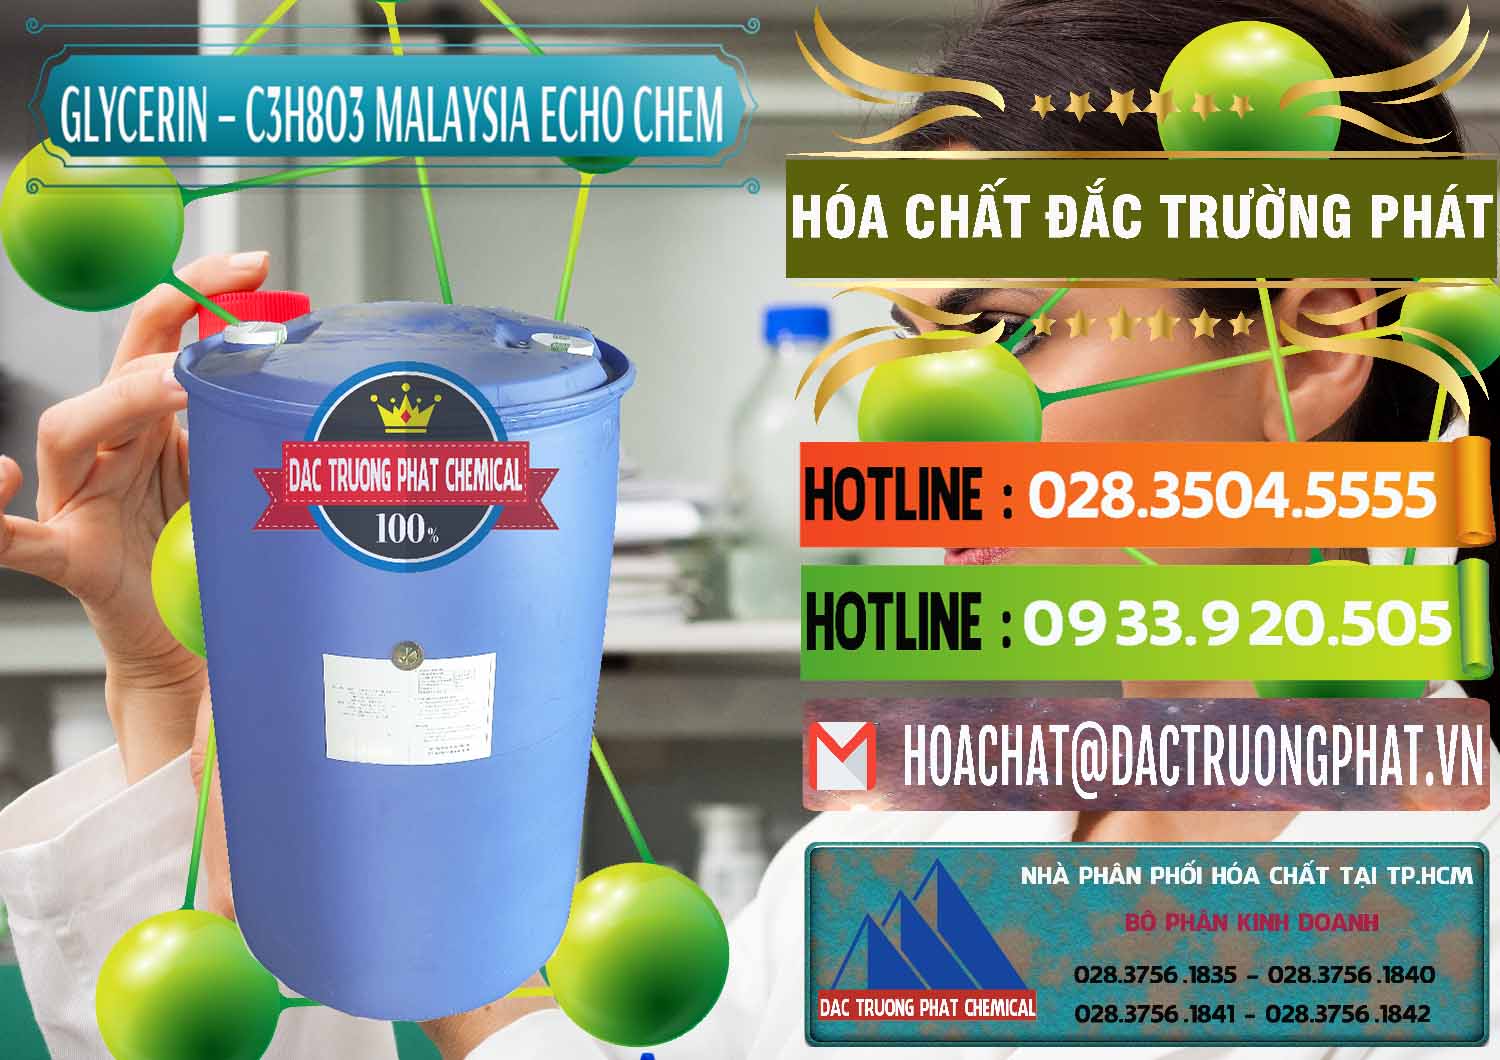 Nơi chuyên nhập khẩu _ bán C3H8O3 - Glycerin 99.7% Echo Chem Malaysia - 0273 - Công ty chuyên phân phối - bán hóa chất tại TP.HCM - cungcaphoachat.com.vn